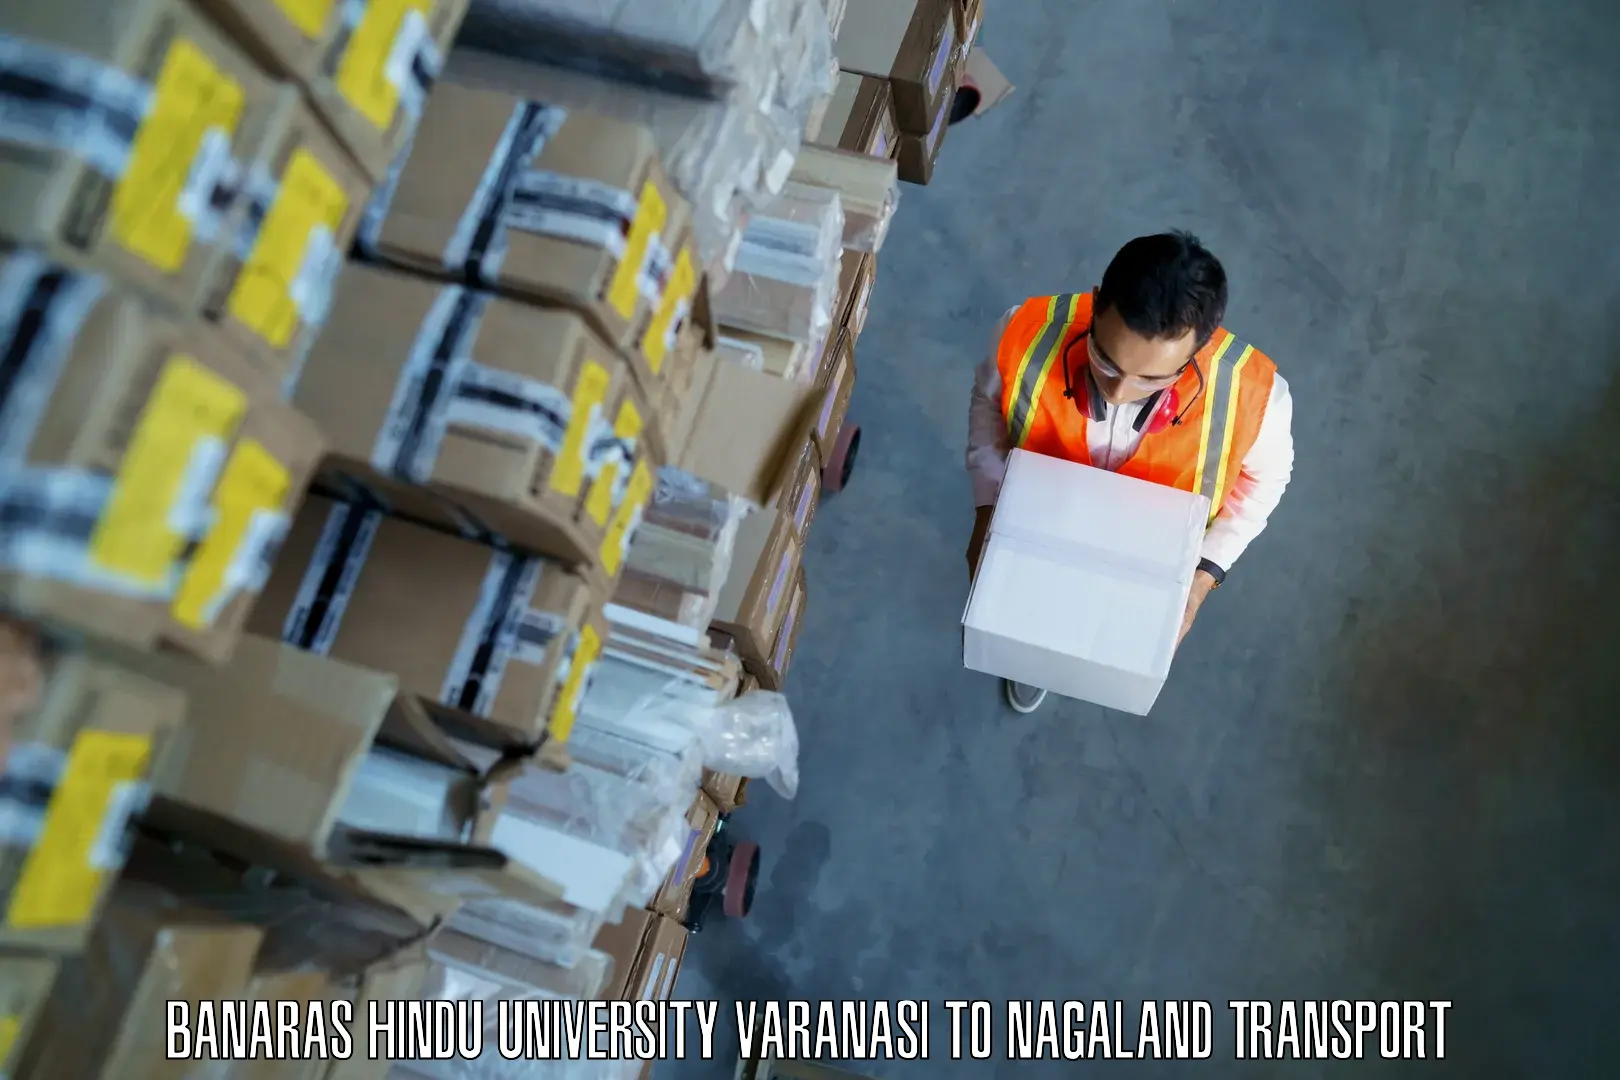 Package delivery services Banaras Hindu University Varanasi to NIT Nagaland